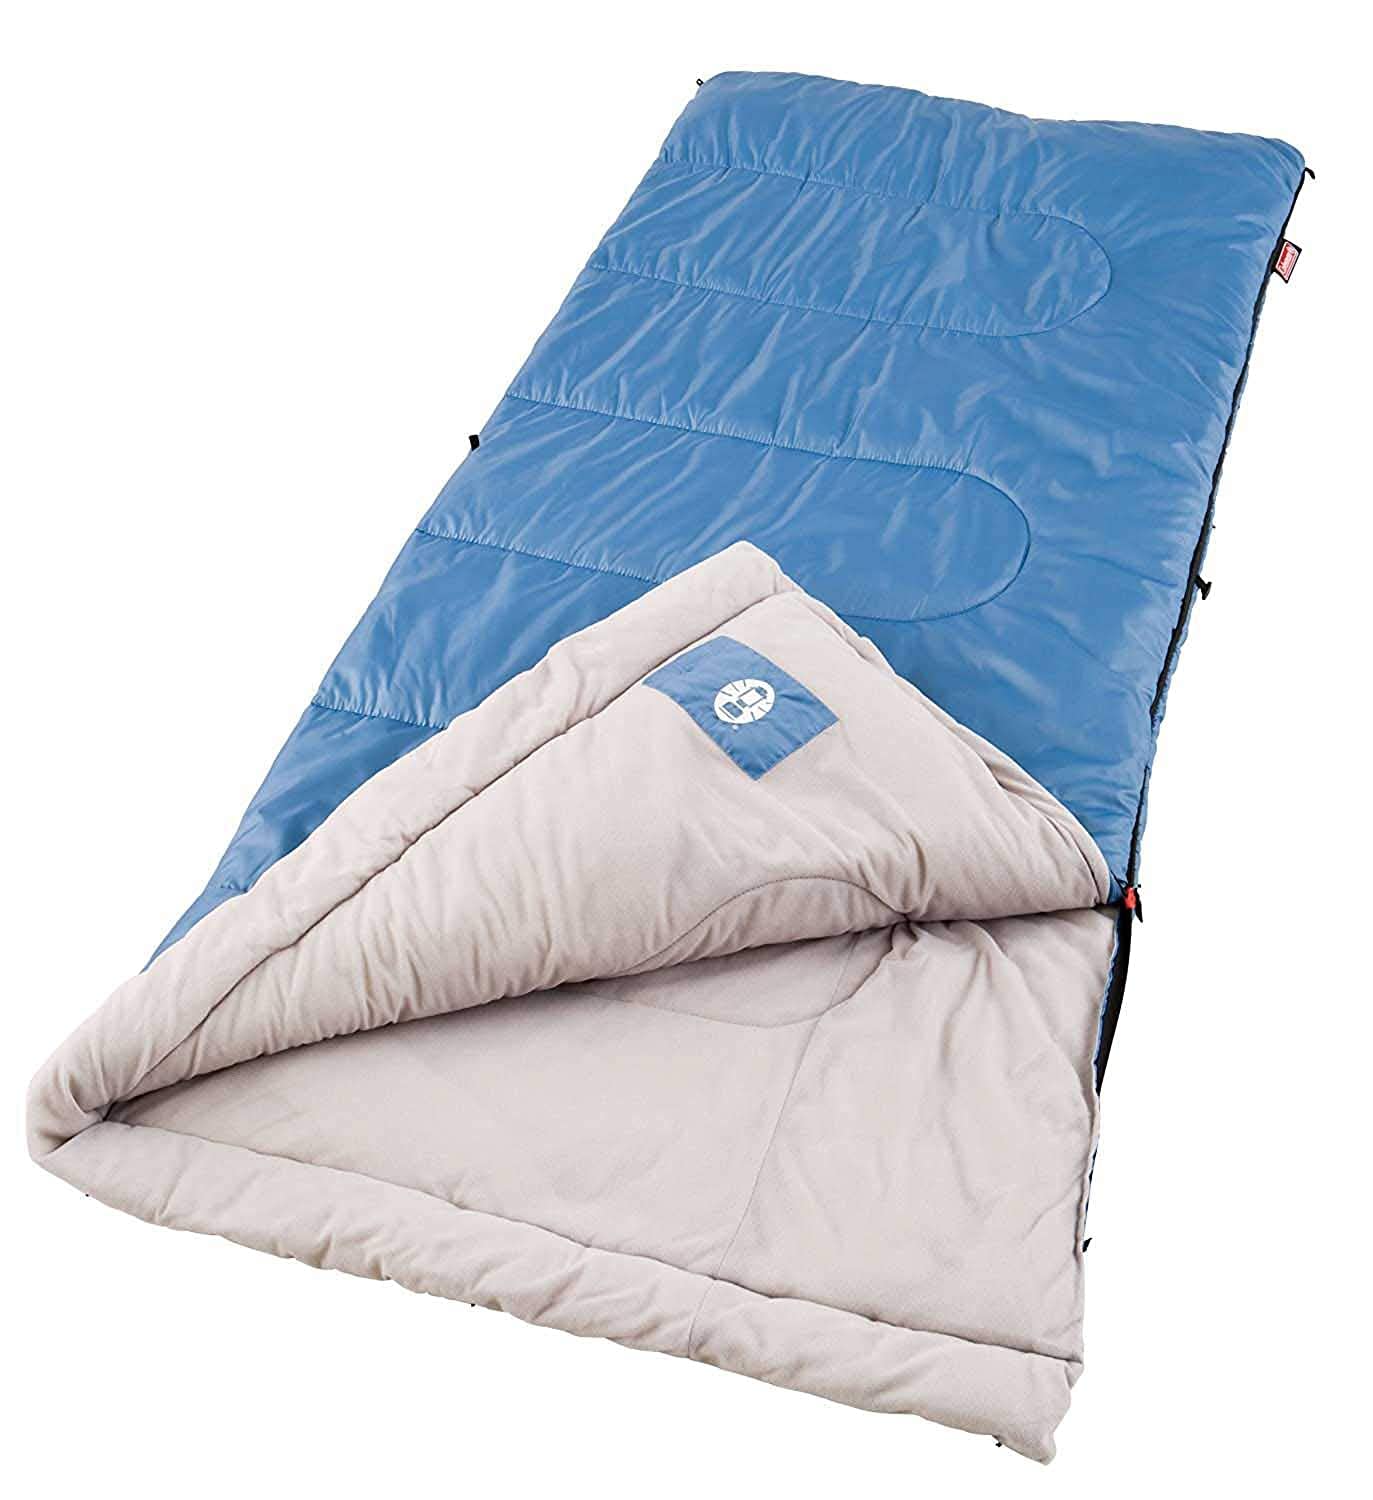 Coleman(コールマン) SUN RIDGE (サン リッジ) 寝袋 最適温度 4.4 〜 15.6 ℃ 180cmまで対応 日本未発売 [並行輸入品]